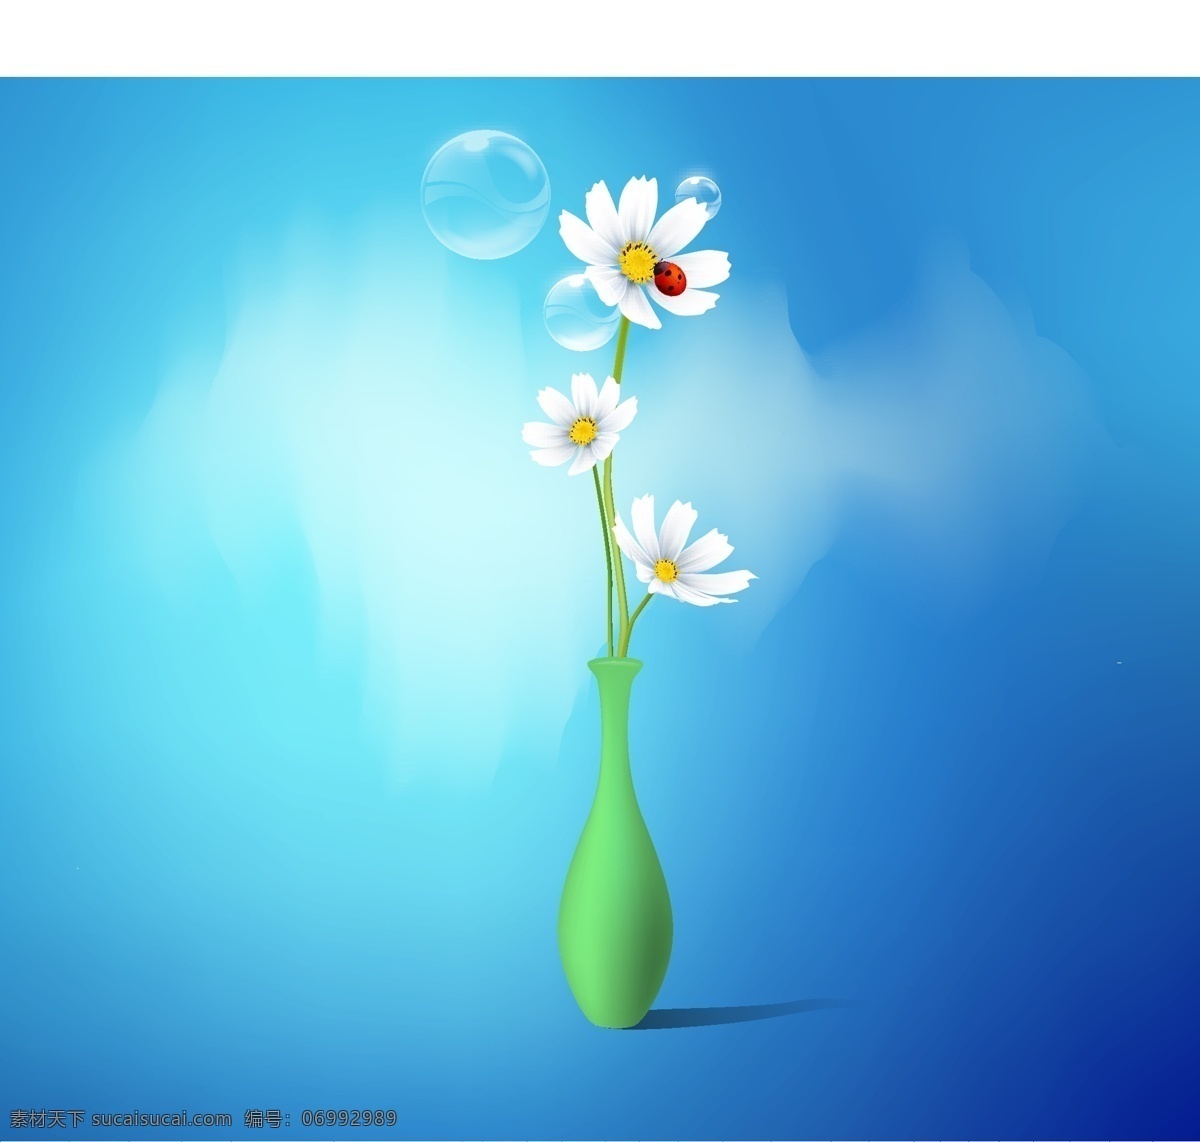 花瓶 向量 花卉矢量 矢量 花 其他载体 青色 天蓝色